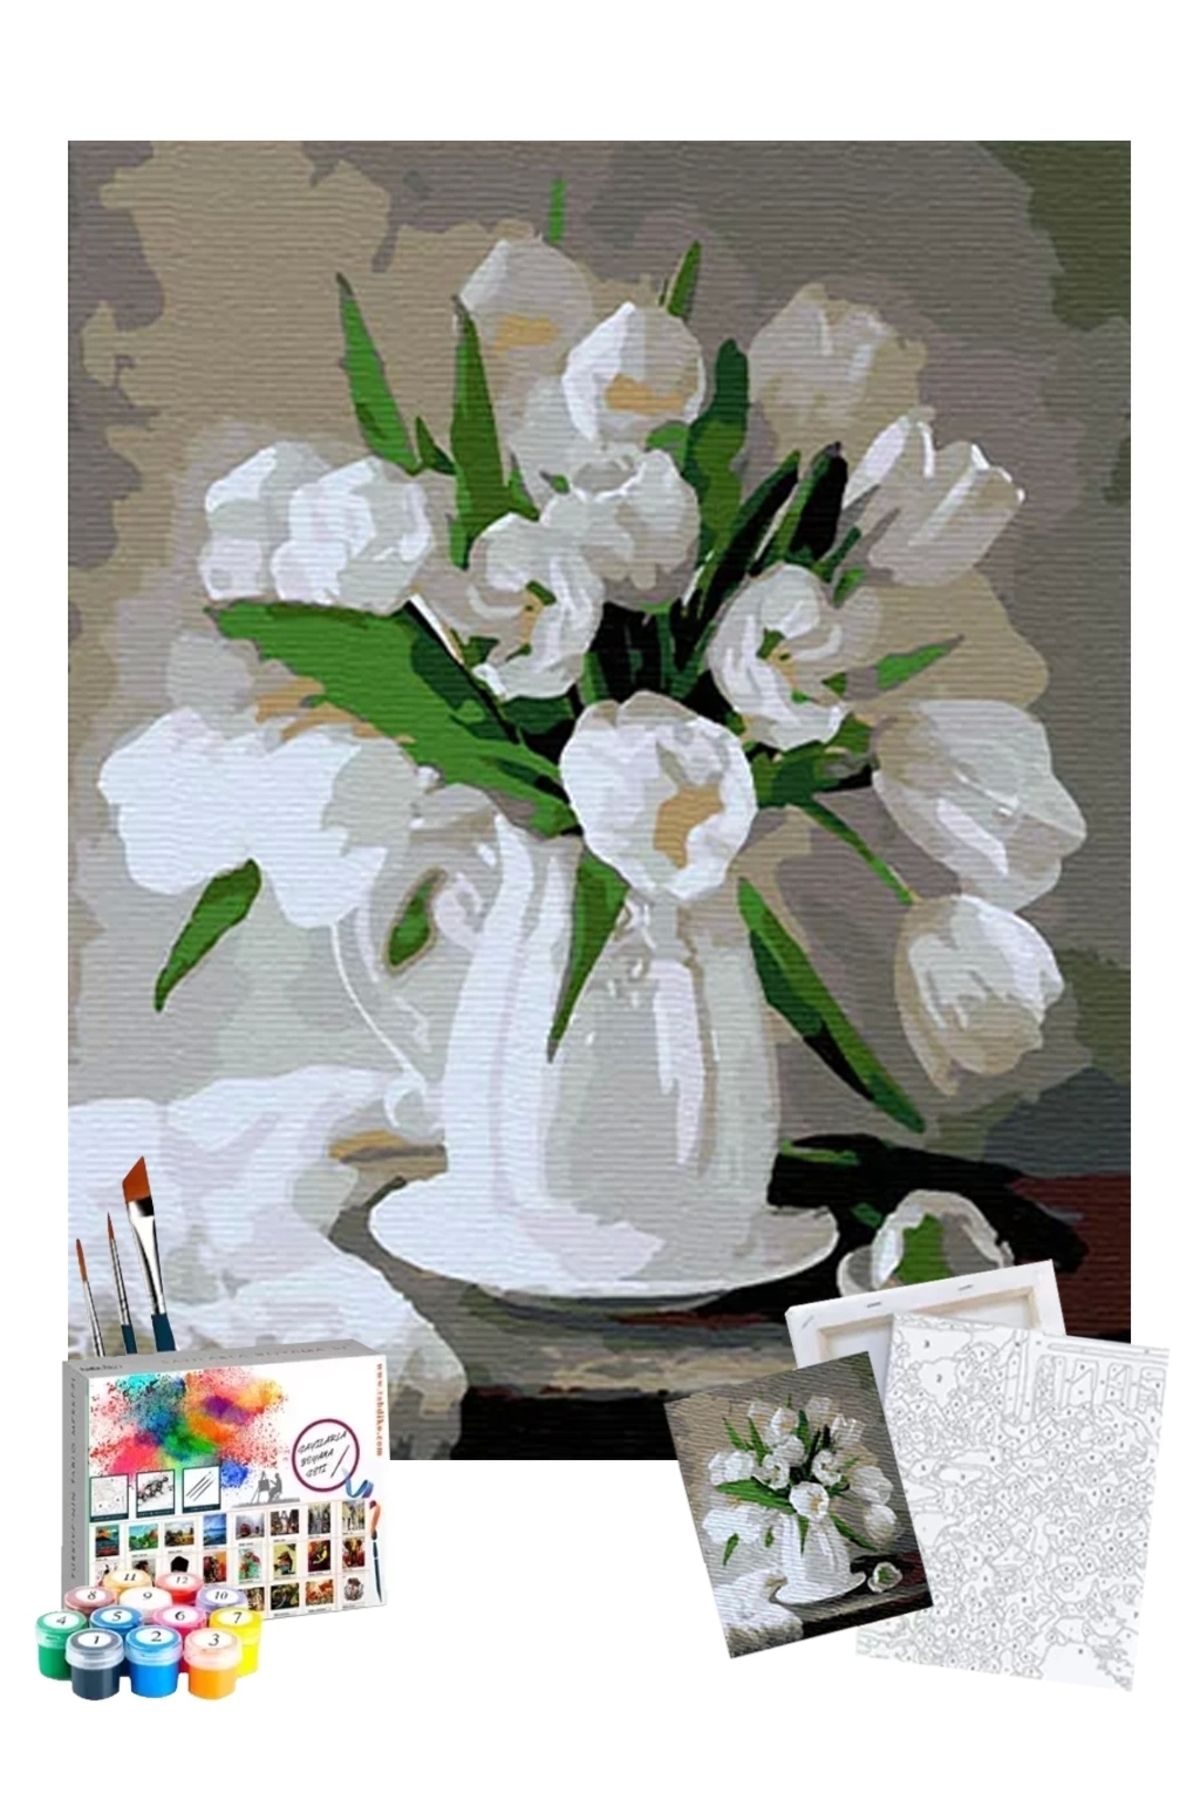 Tabdiko Sayılarla Boyama Seti 40 X 50 Cm Tuval Şasesine Gerili Beyaz Çiçekler